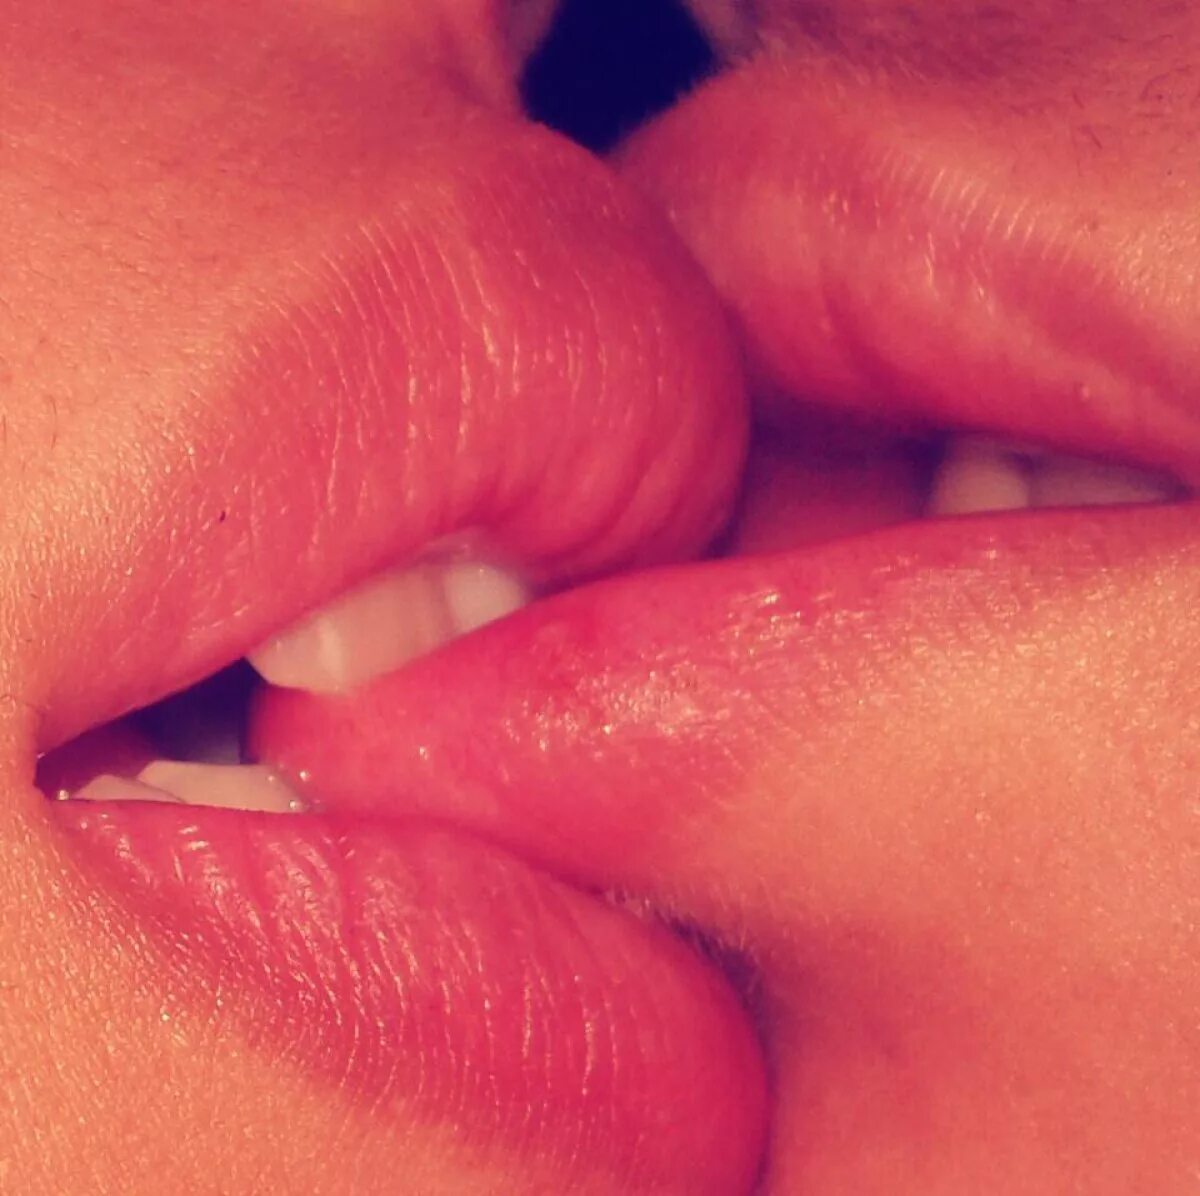 Красиво лижет языком. Поцелуй в губы. Поцелуй с языком. Губки девушки.